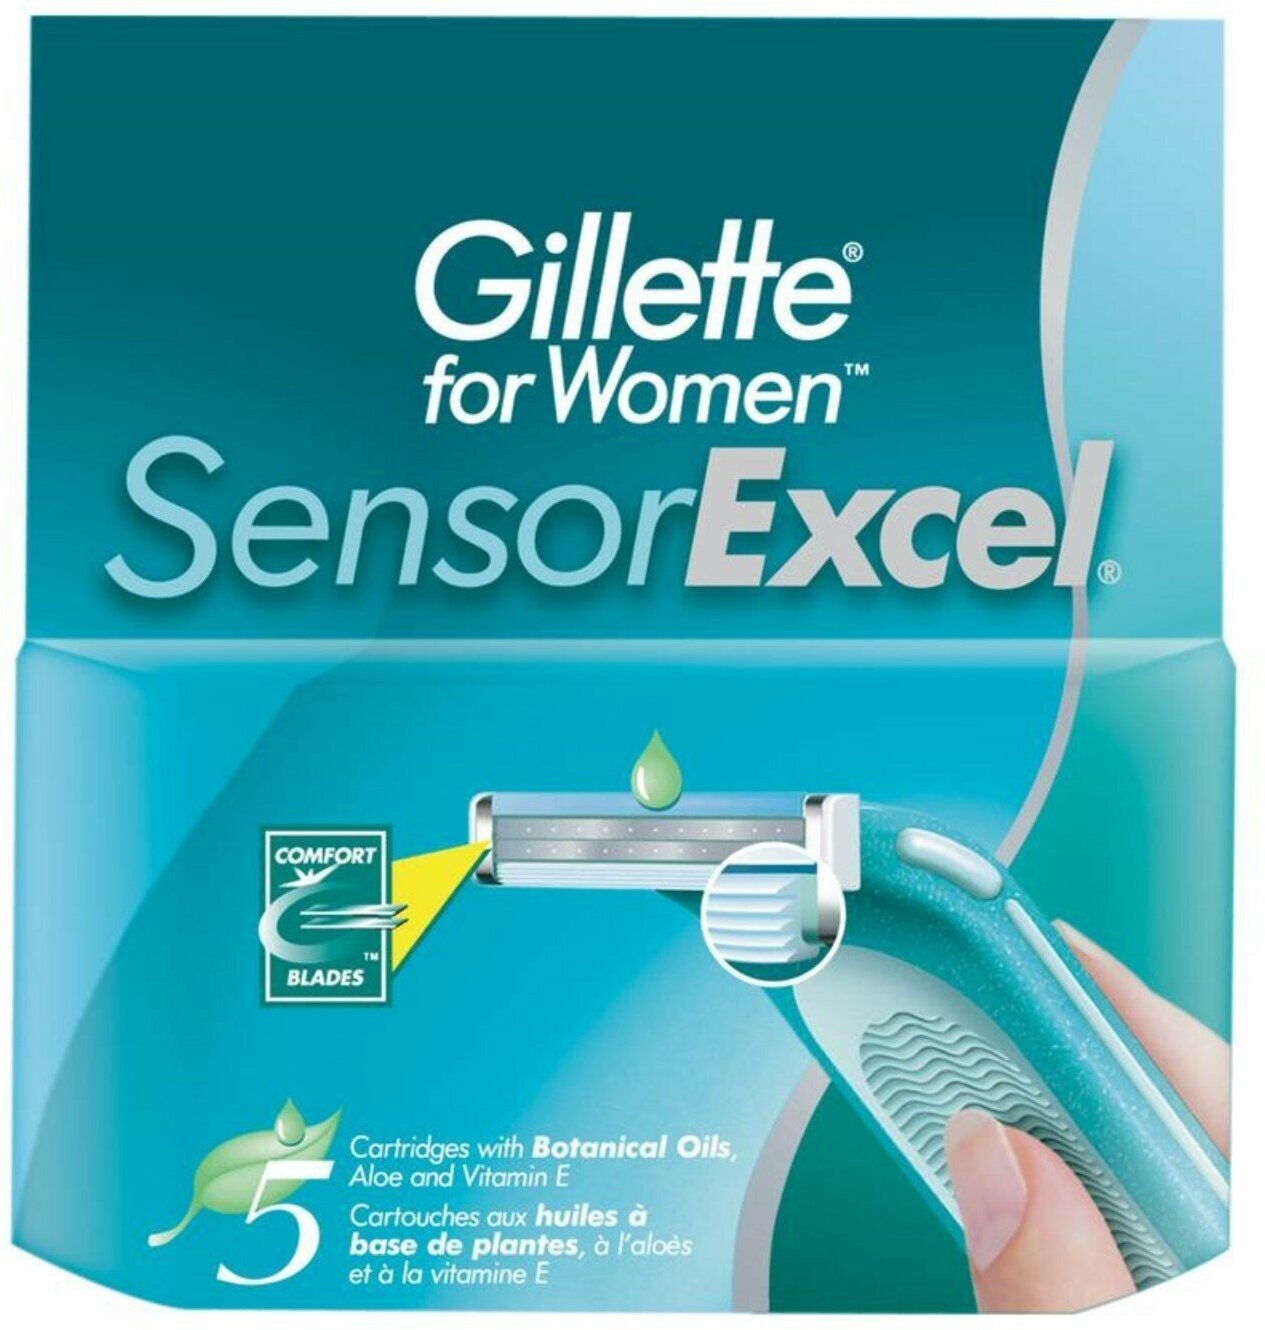 Сменные кассеты for Women Sensor Excel, 2 лезвия, 5 шт.